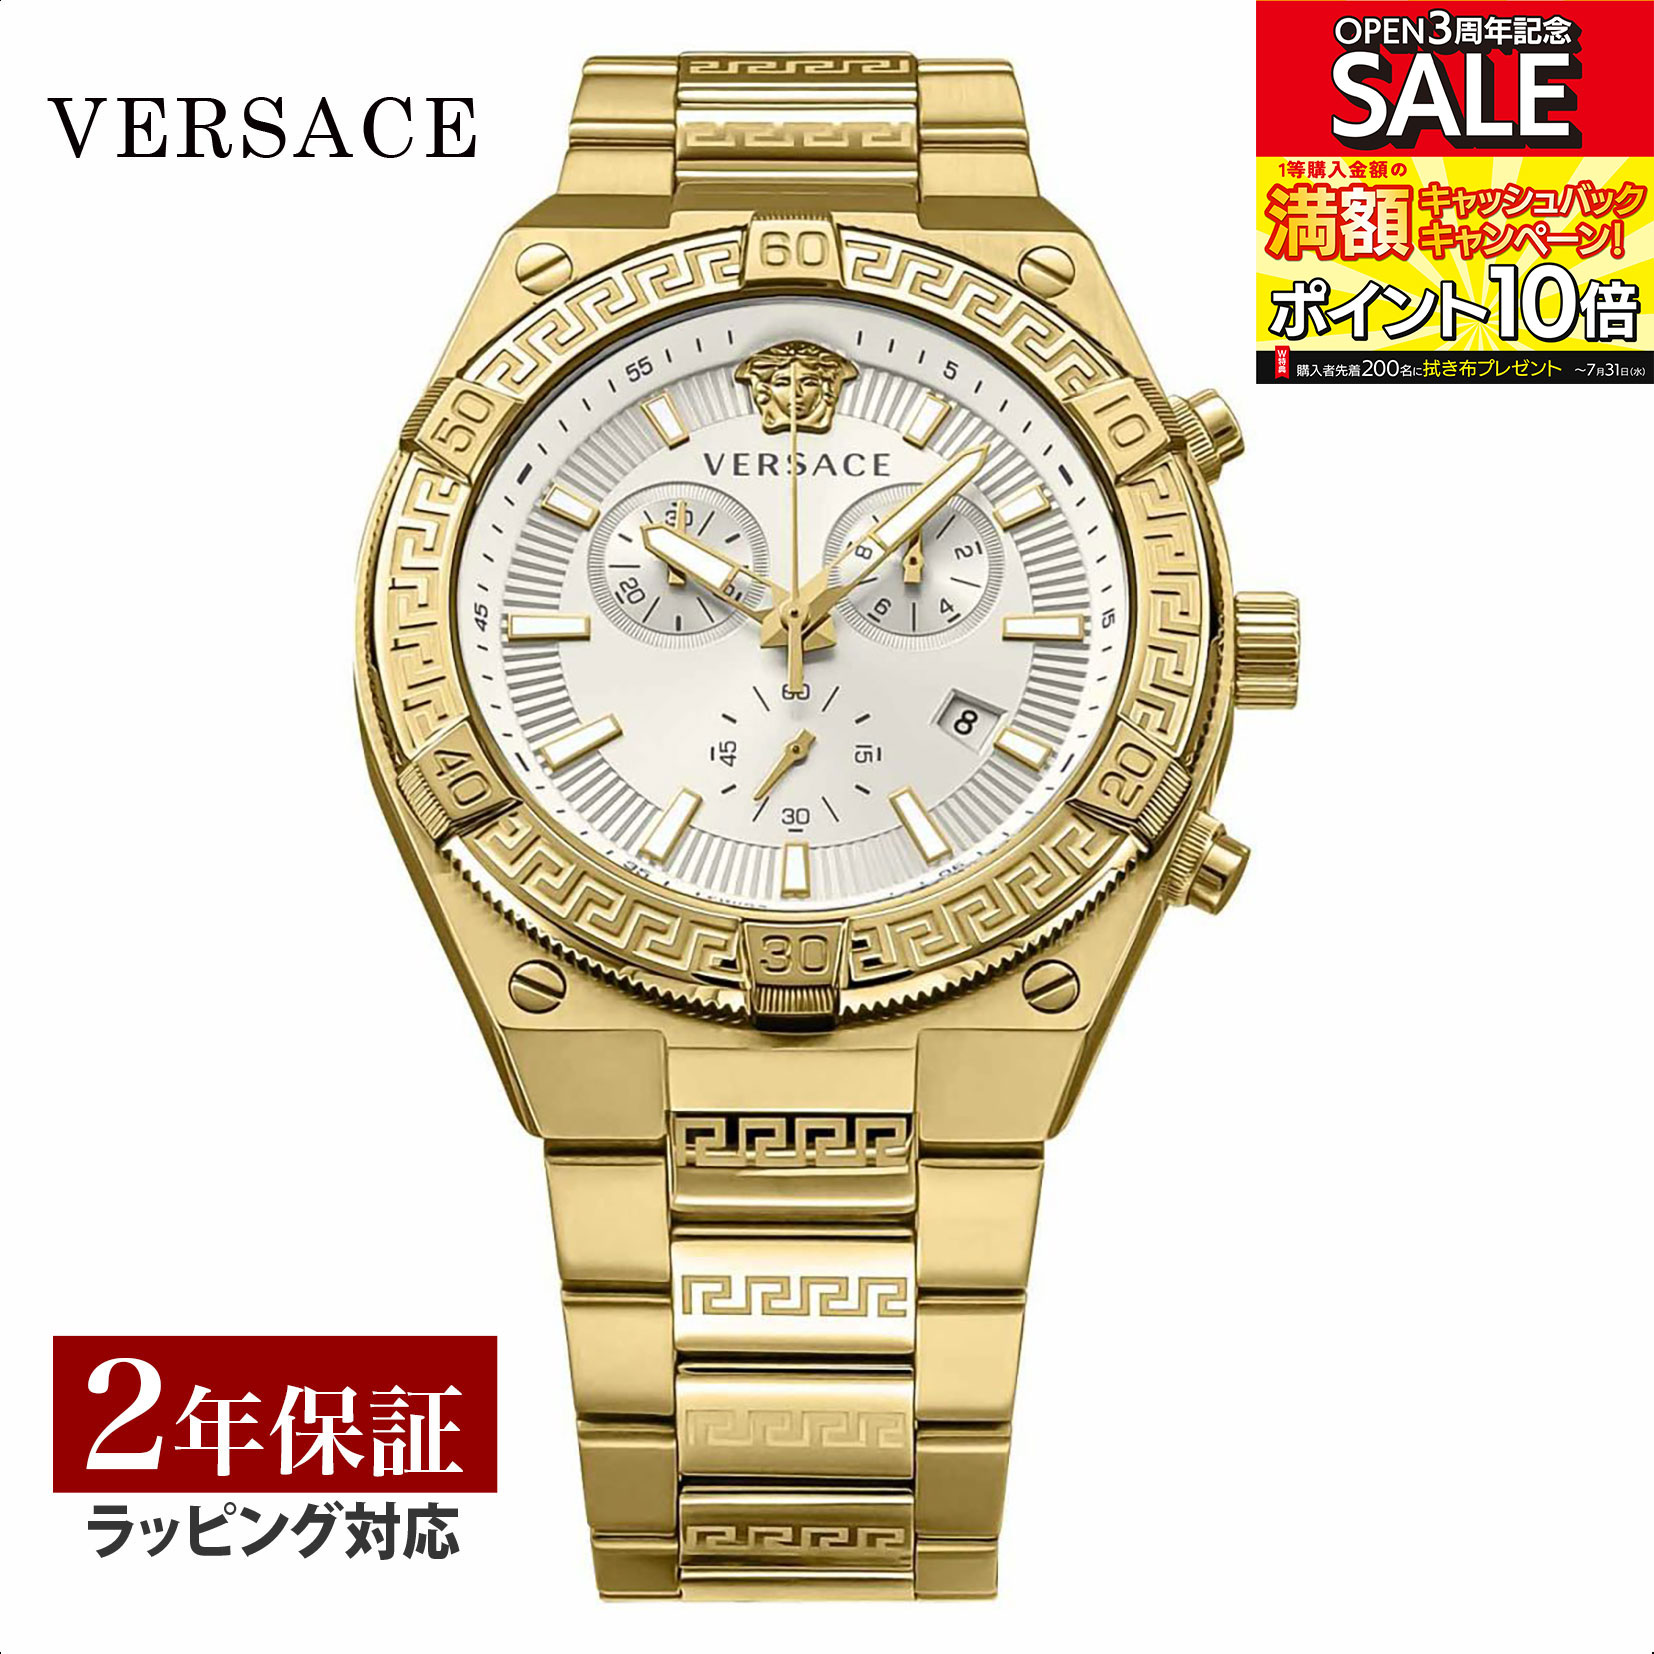 ヴェルサーチ 腕時計（メンズ） ヴェルサーチェ ヴェルサーチ VERSACE メンズ 時計 SPORTY GRECA スポーティー グレカ クォーツ ブラック VESO00822 時計 腕時計 高級腕時計 ブランド